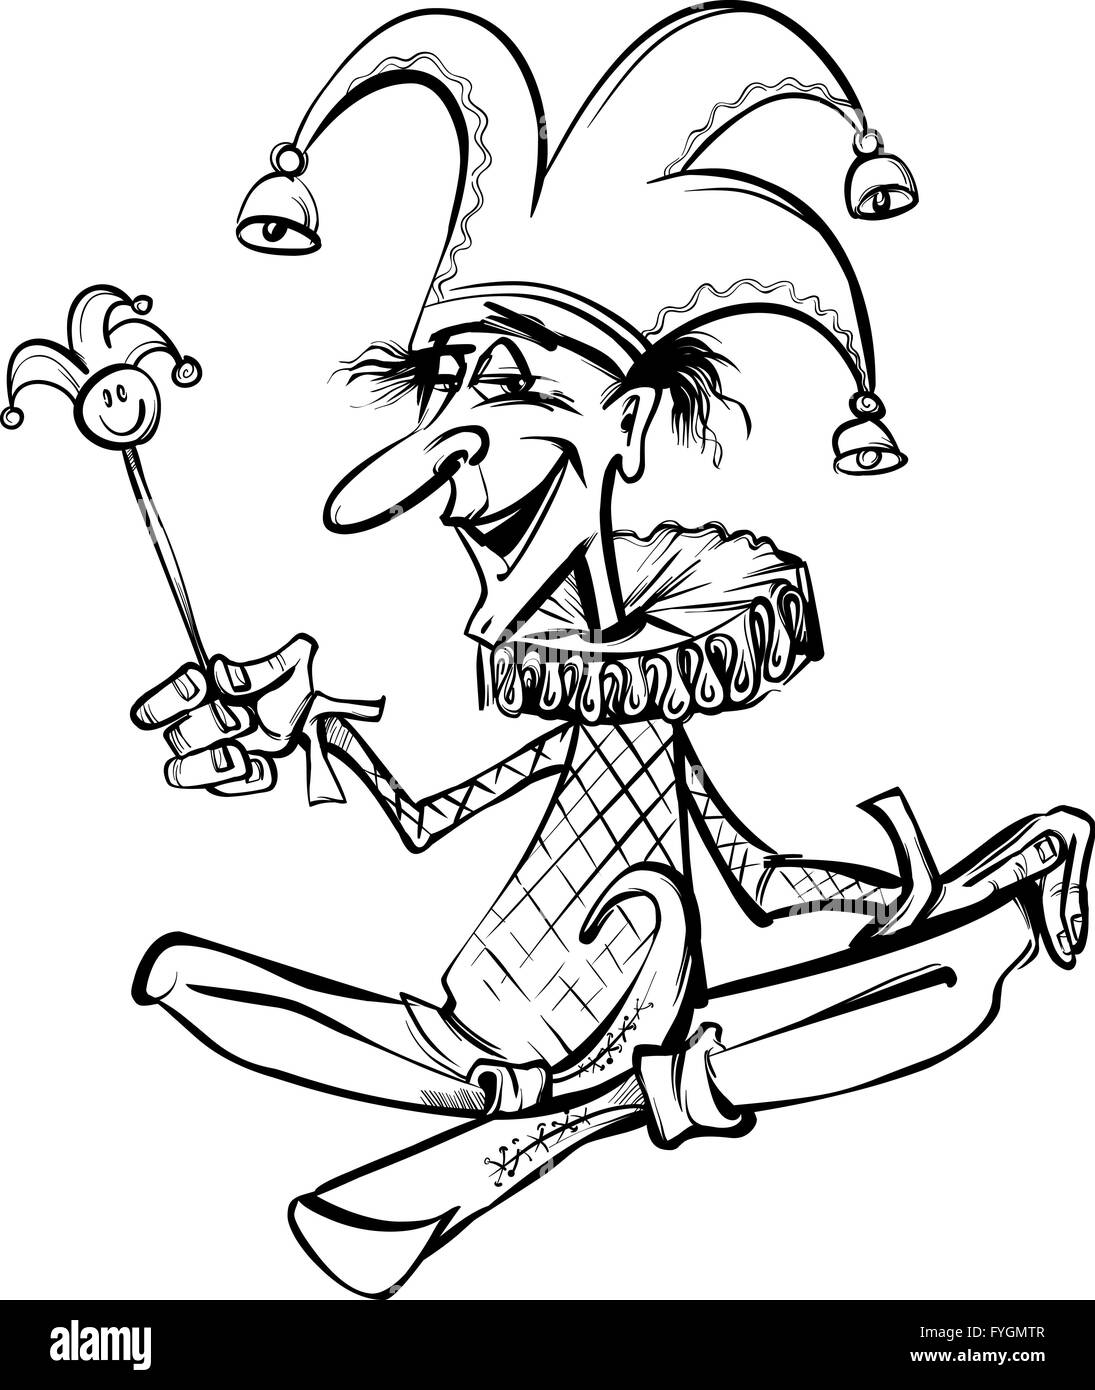 jester or joker cartoon illustration Stock Photo